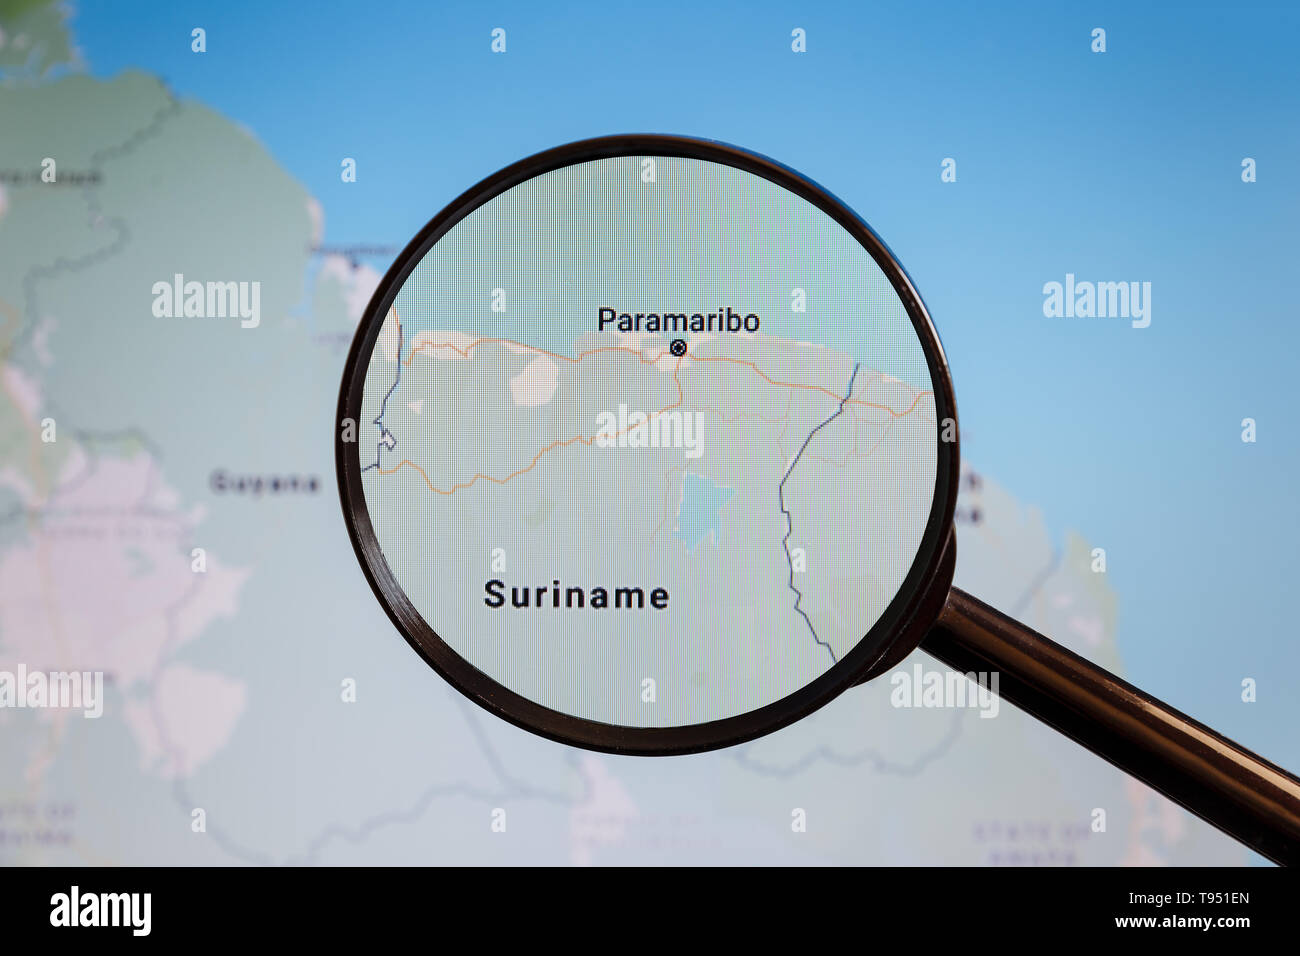 En Paramaribo, Suriname. Mapa político. La ciudad en la pantalla del monitor a través de una lupa. Foto de stock